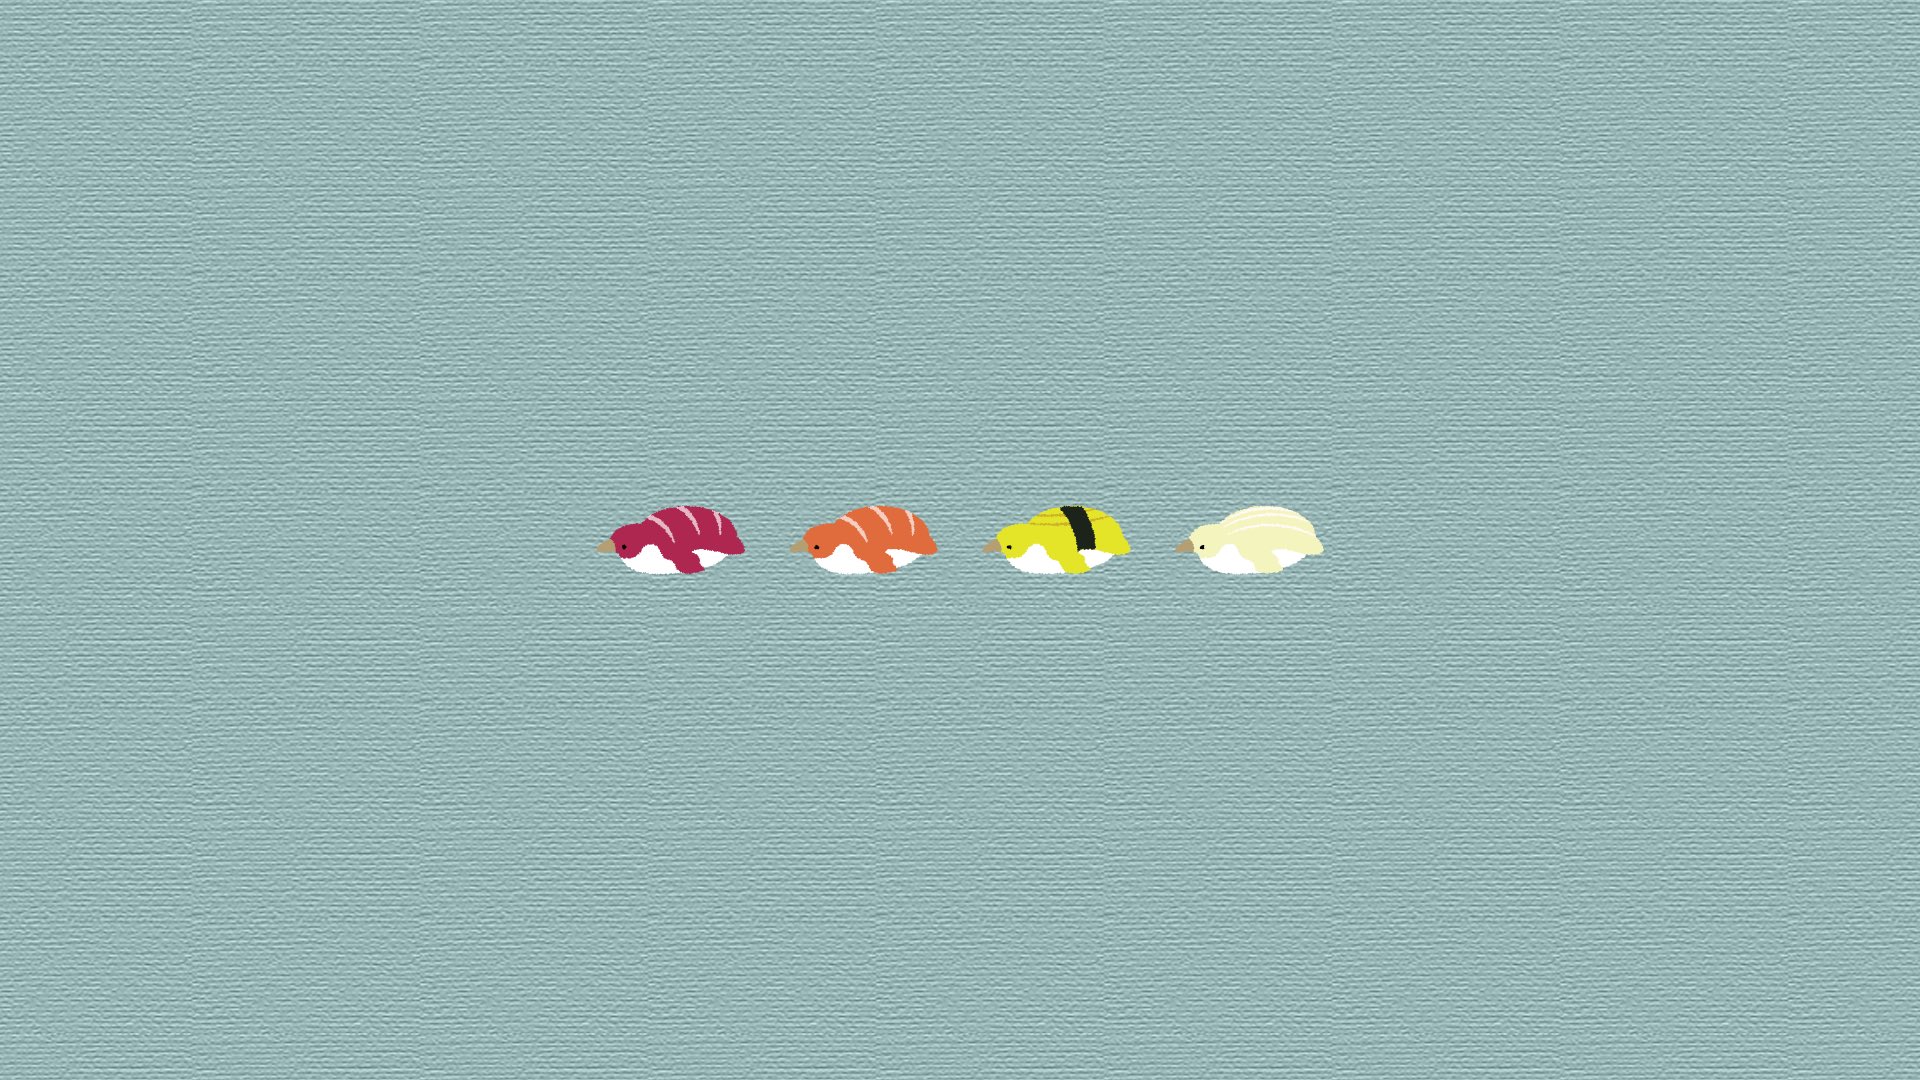 Twitter 上的 Numata すしみたいなペンギンの壁紙を作ったので 誰かに使っていただけるとテンションあがります イラスト 壁紙 Illustration ペンギン おすし イラスト好きな人と繋がりたい デスクトップ背景 スシロー行きたい Sushi T Co